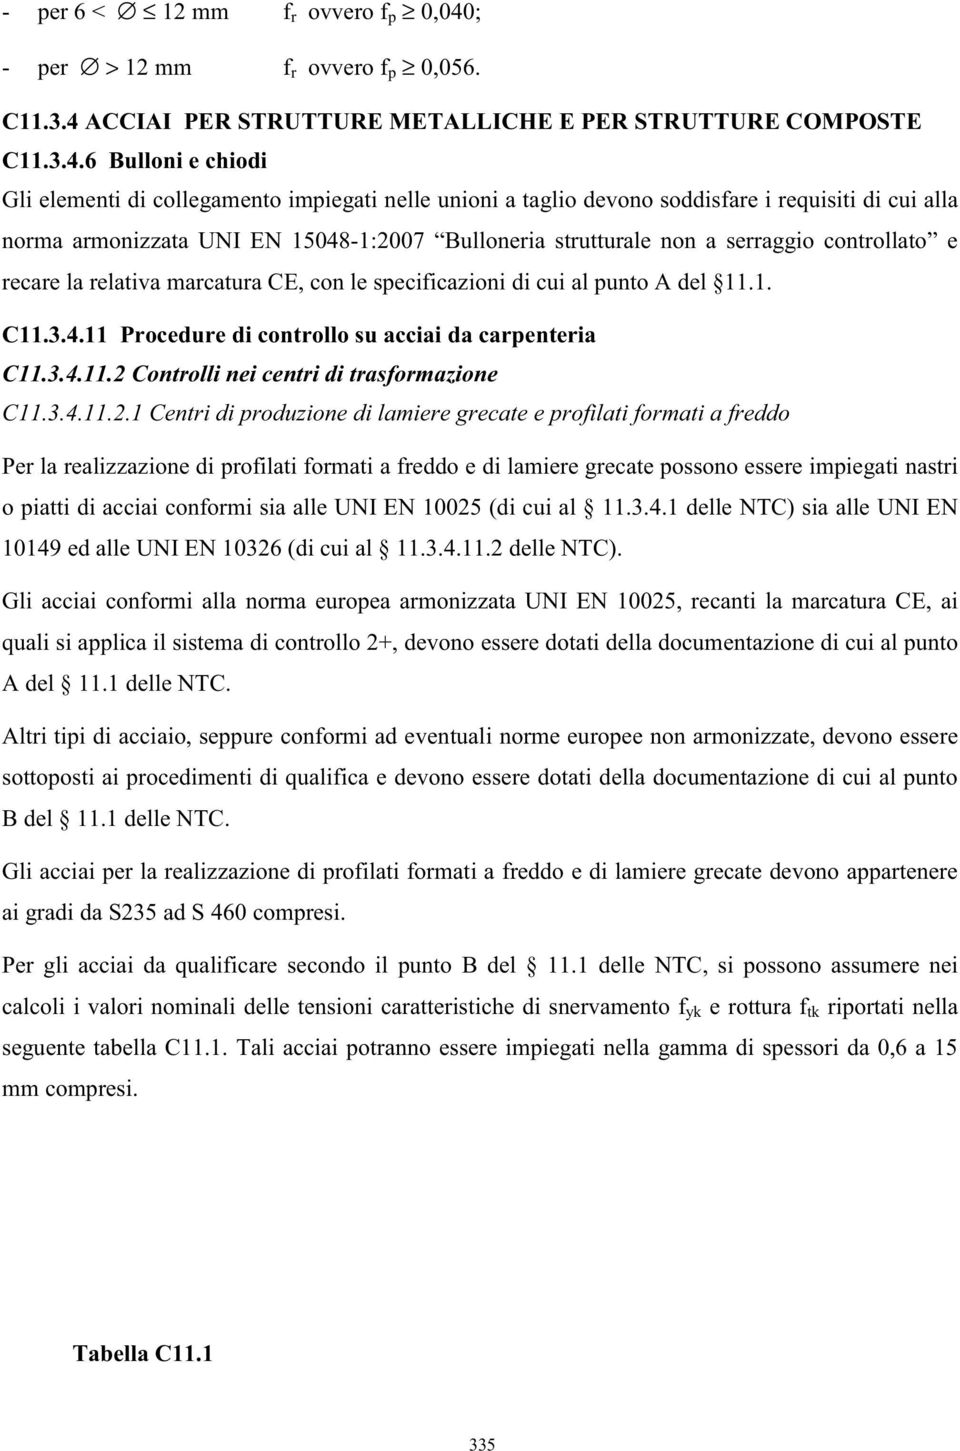 ACCIAI PER STRUTTURE METALLICHE E PER STRUTTURE COMPOSTE C11.3.4.